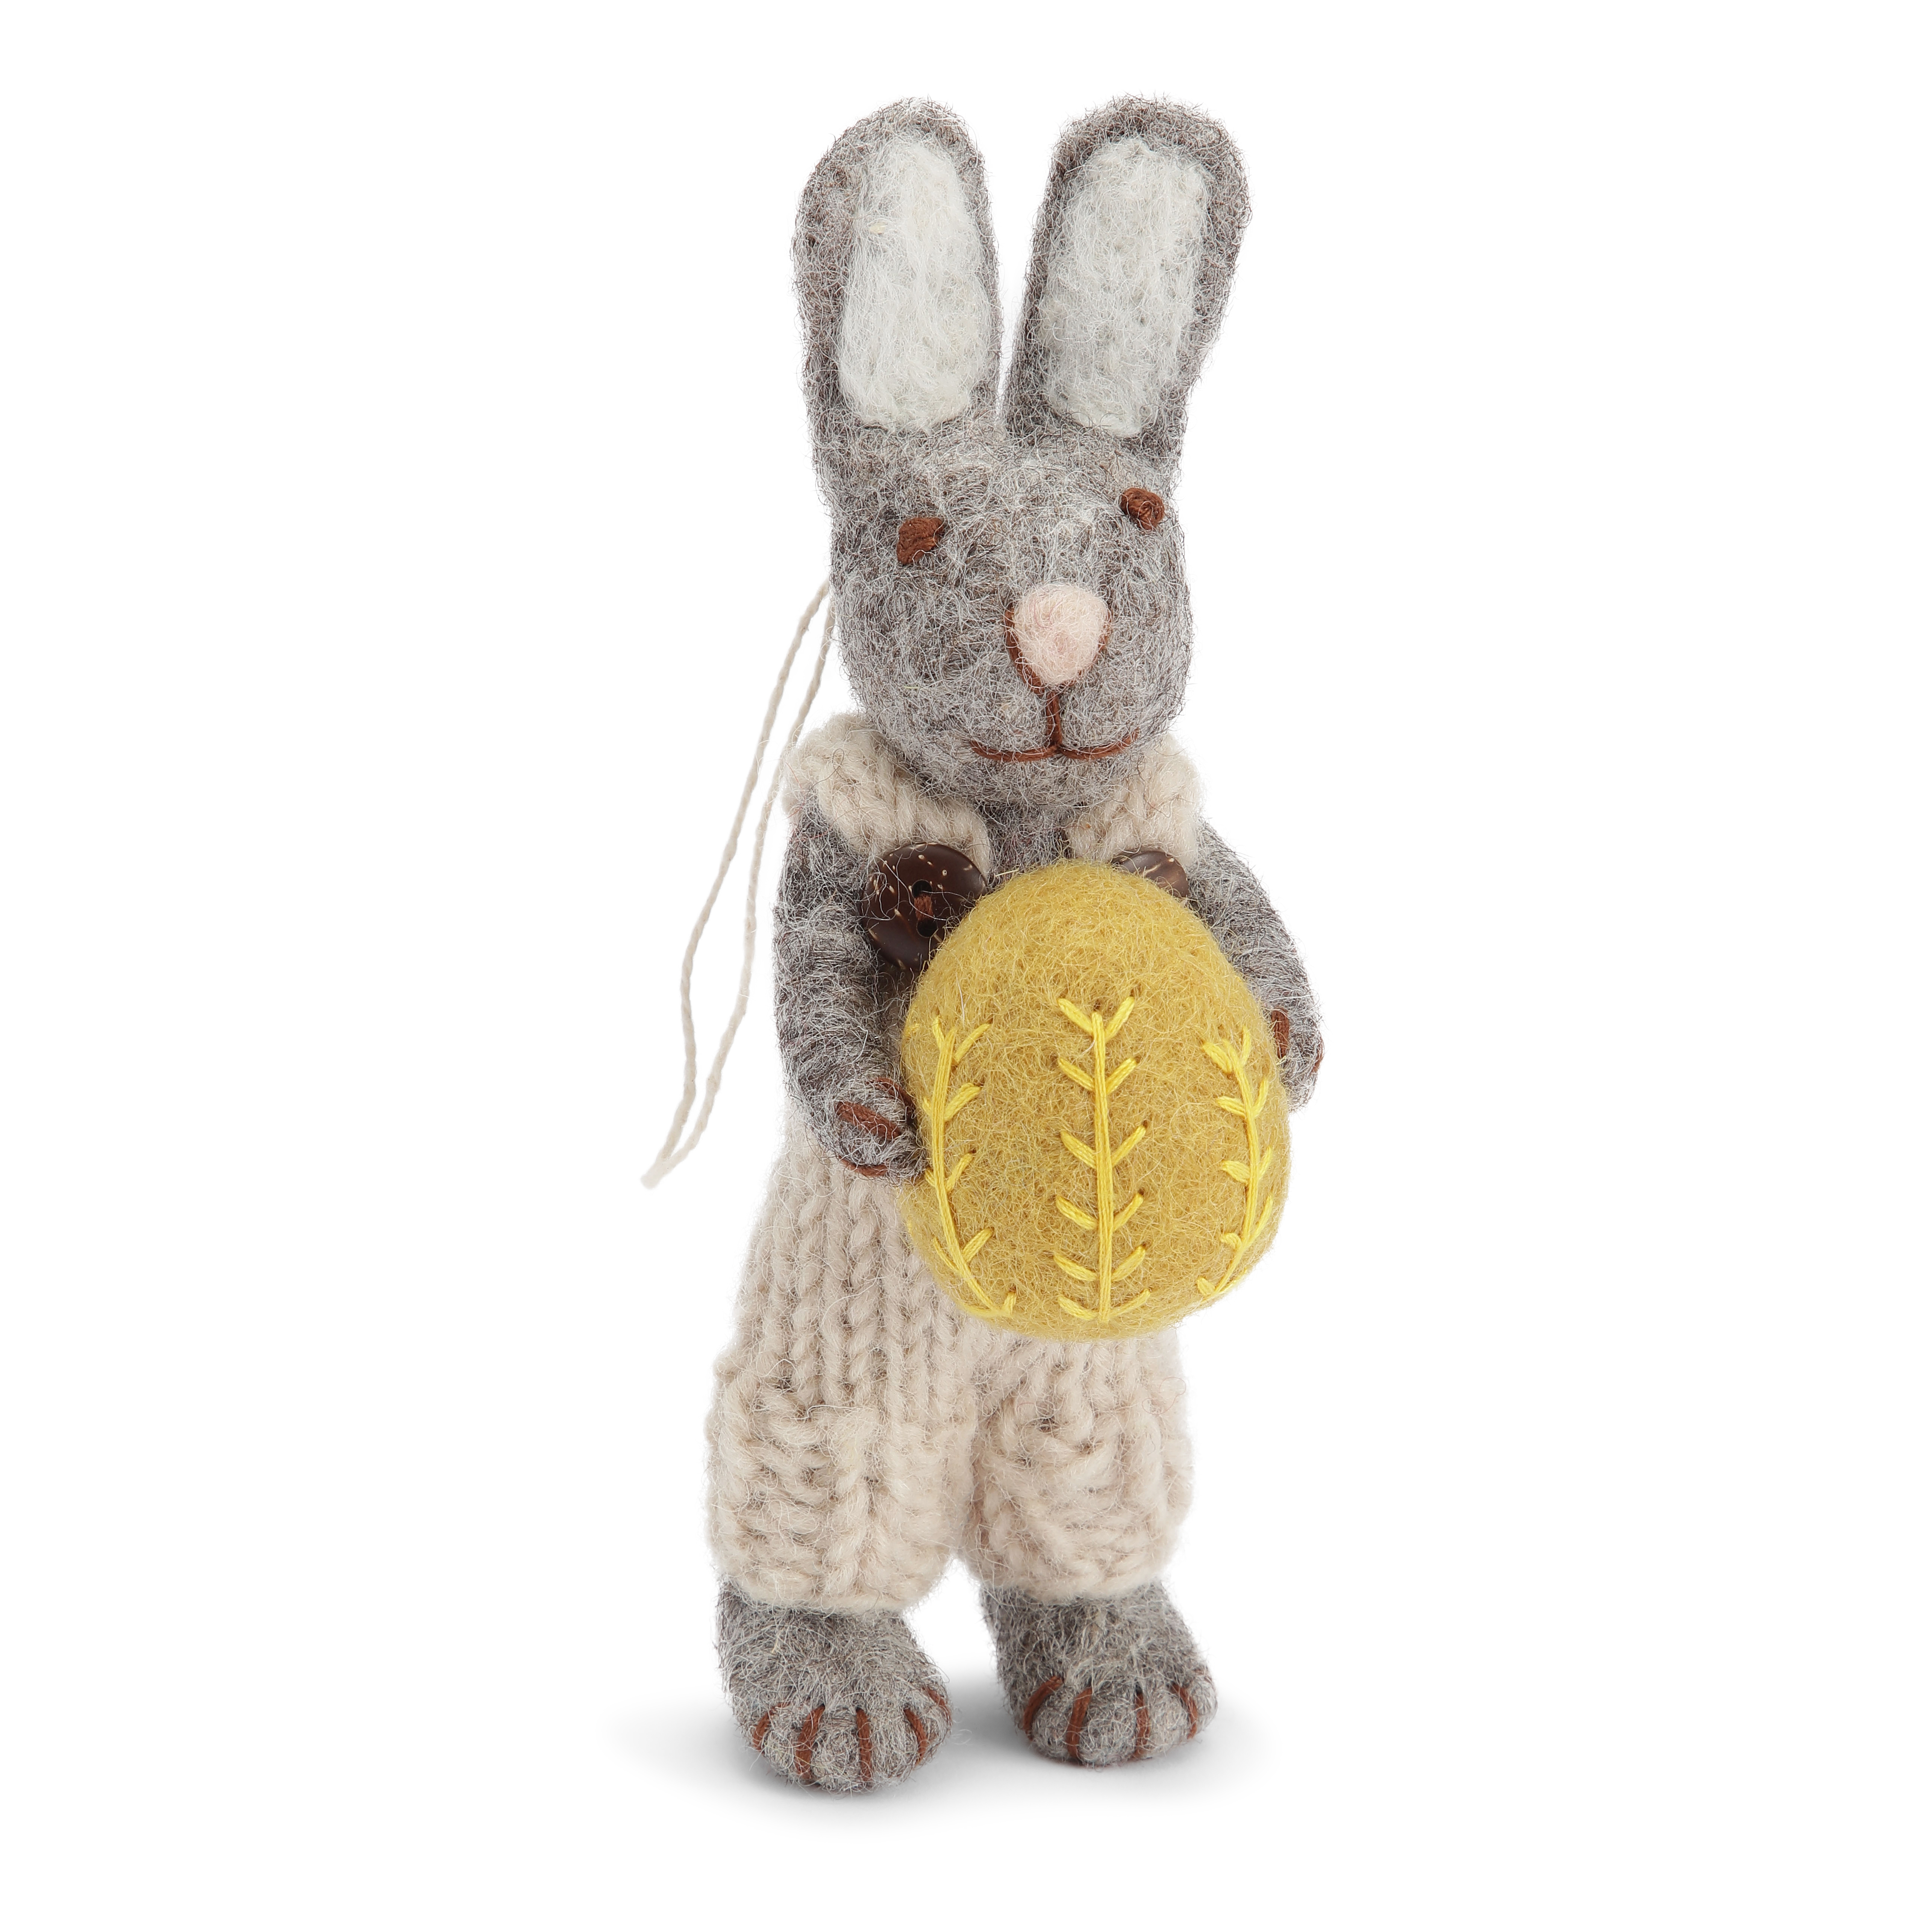 Gry & Sif grauer handgefilzter Hasi mit hellgrauer Hose und gelben Ei 14 cm